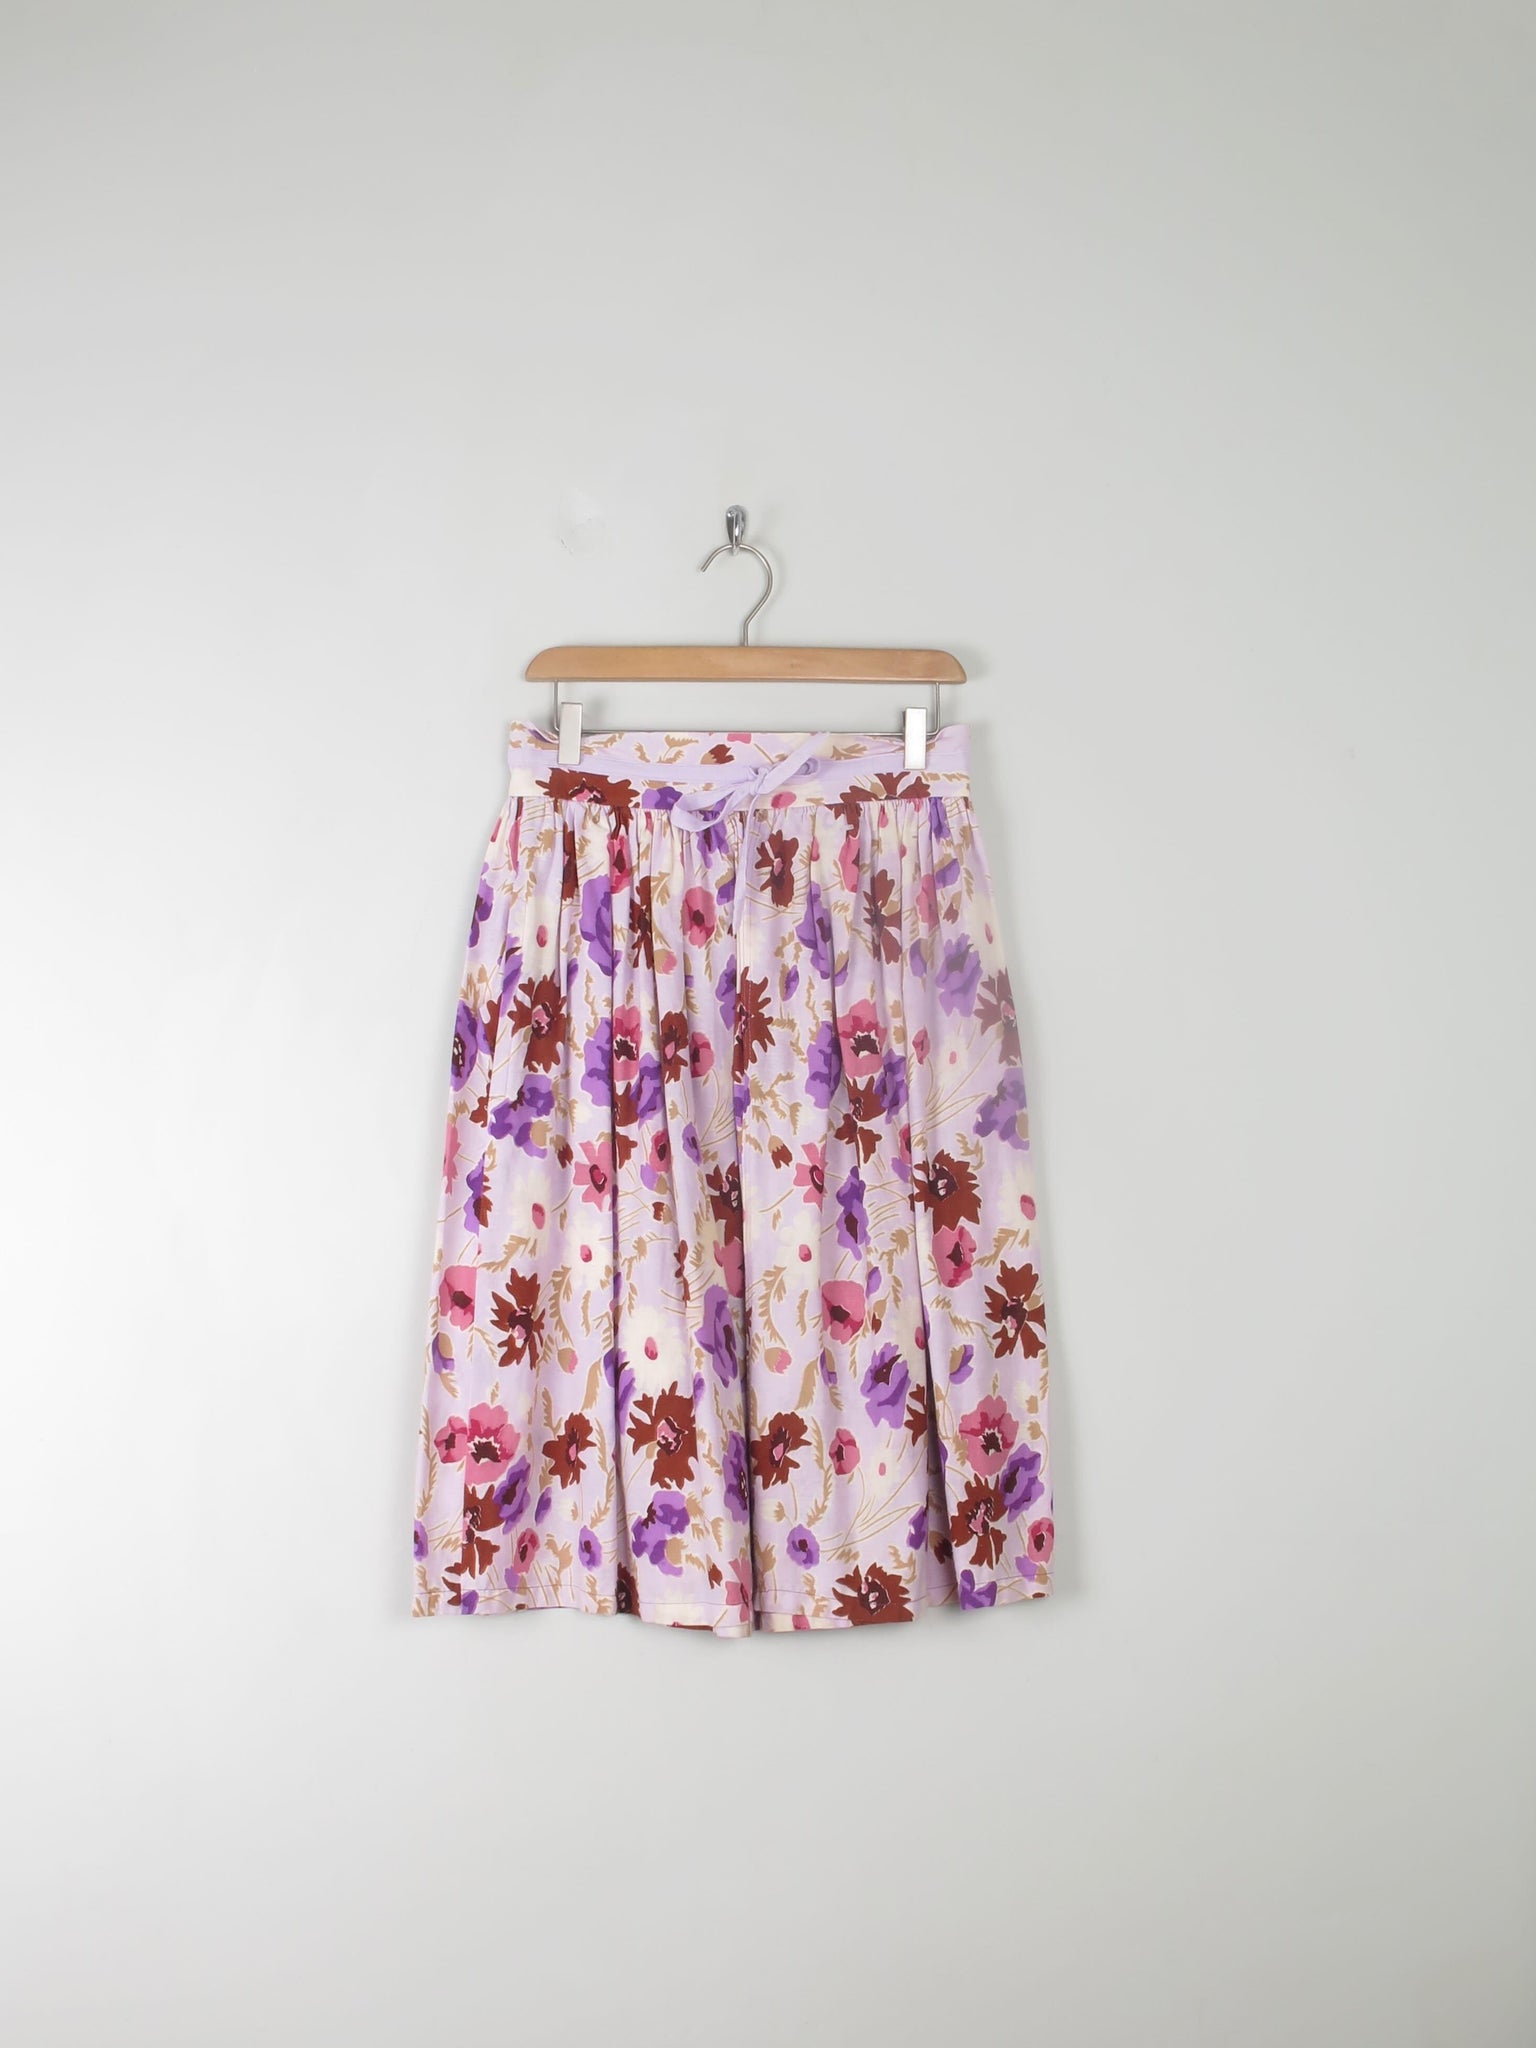 Vintage Floral Printed Skirt 8/10 - The Harlequin